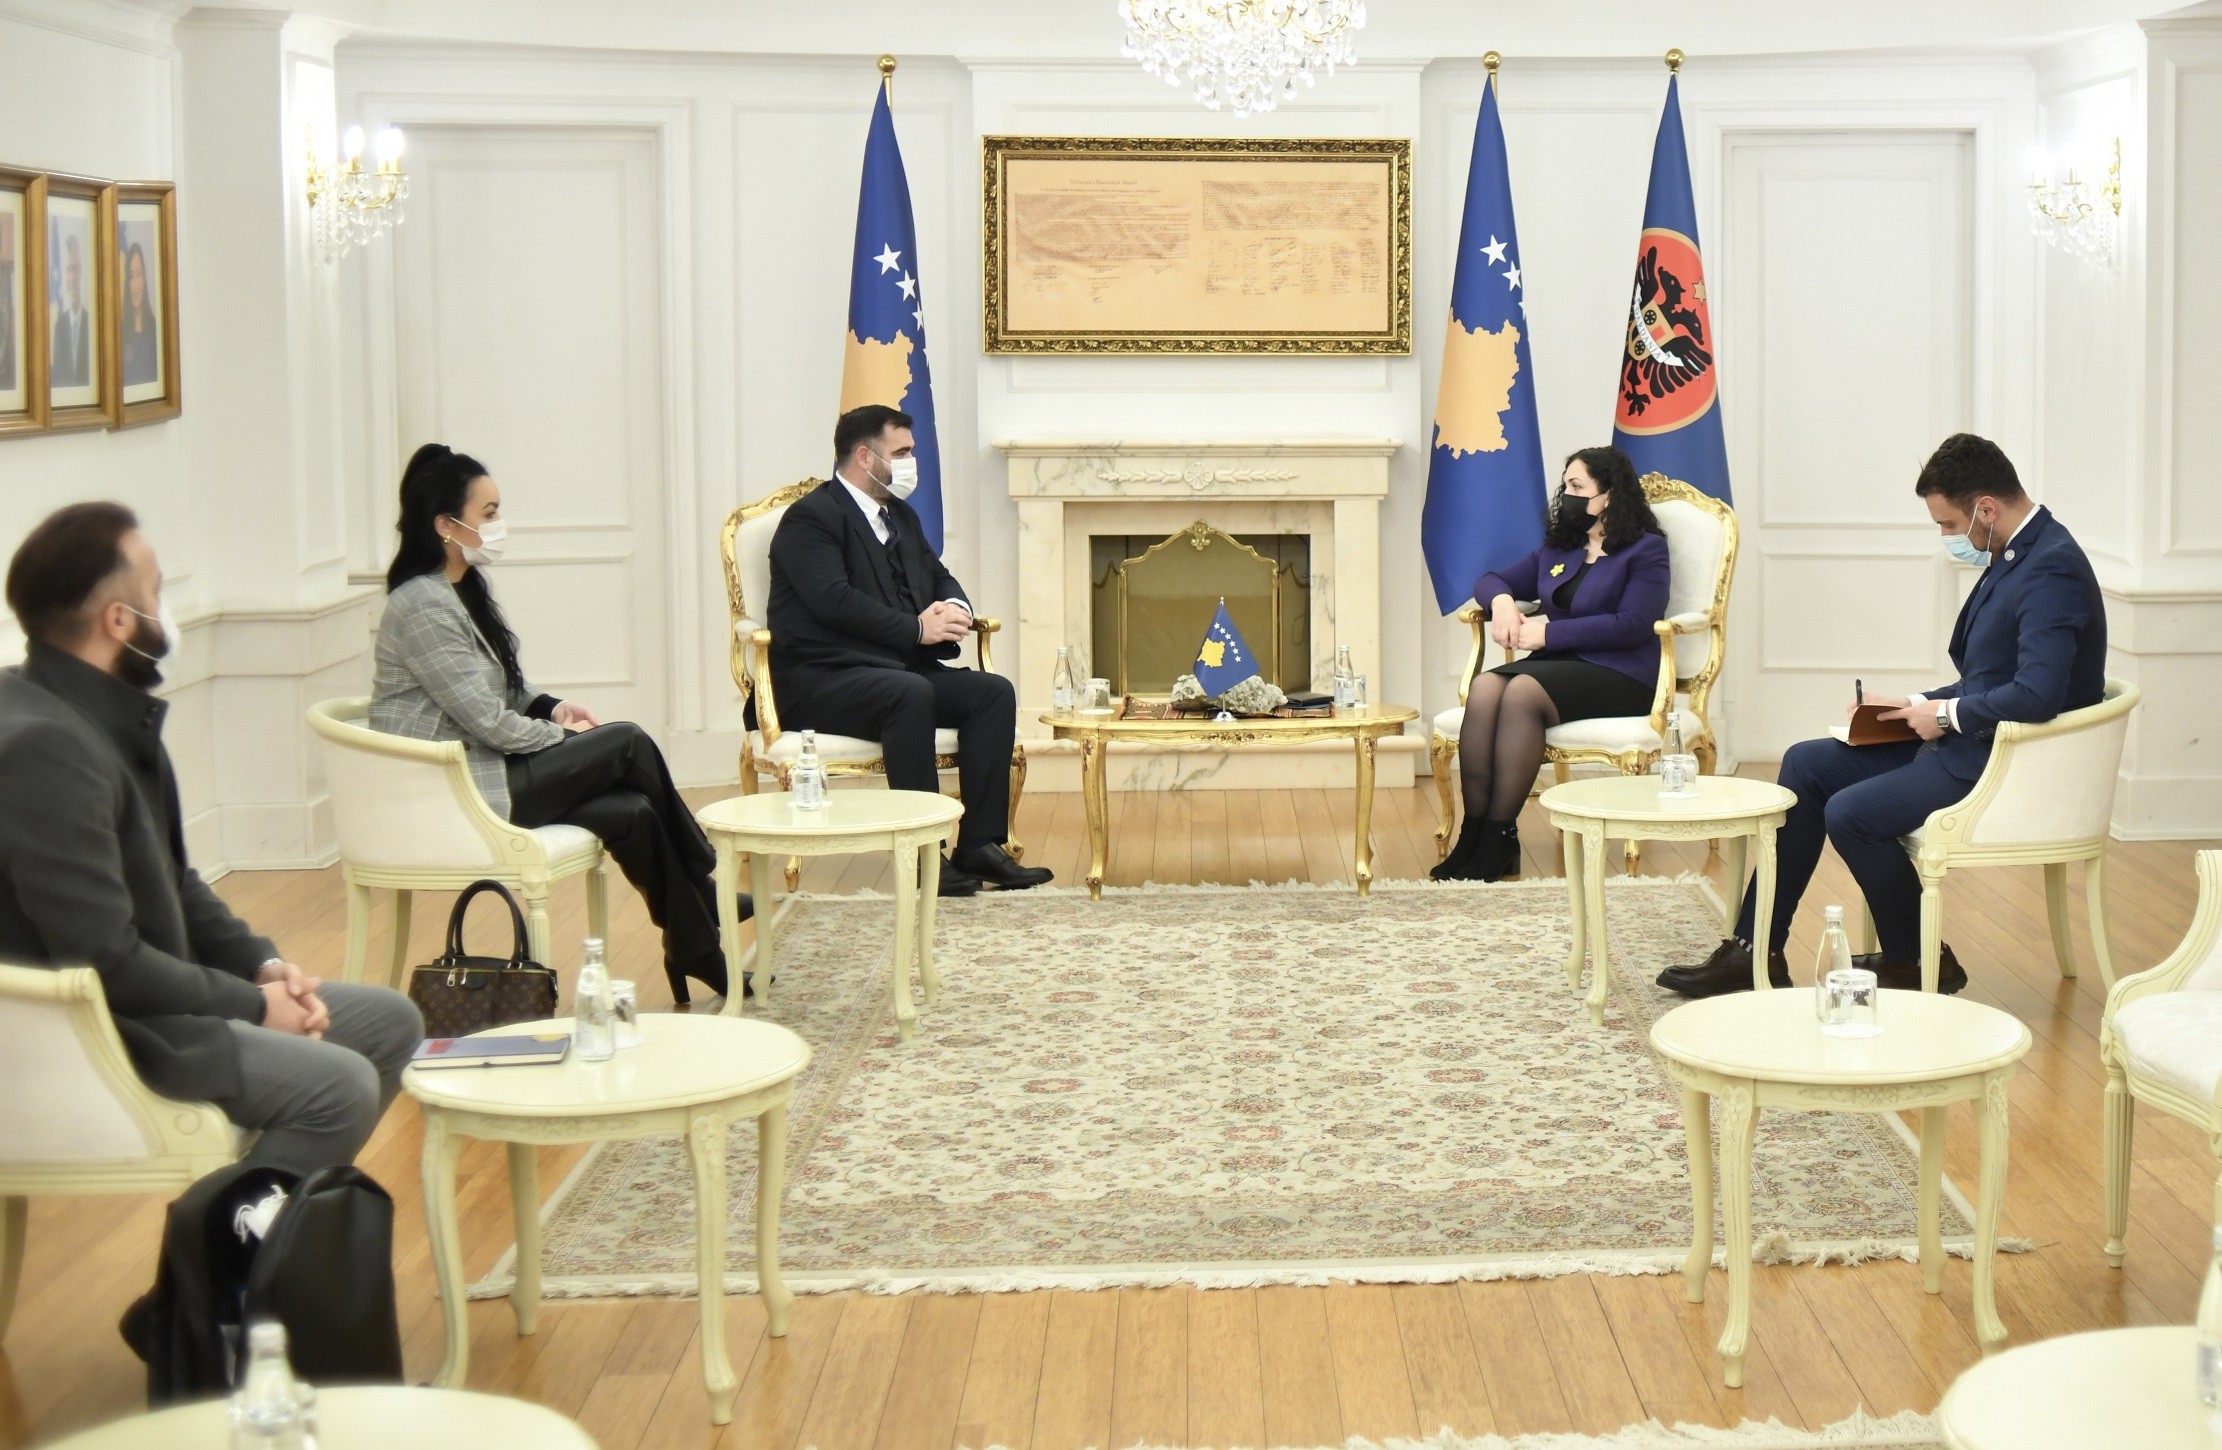 Presidentja Osmani mbështet Këshillin Kombëtar Shqiptar të Luginës së Preshevës